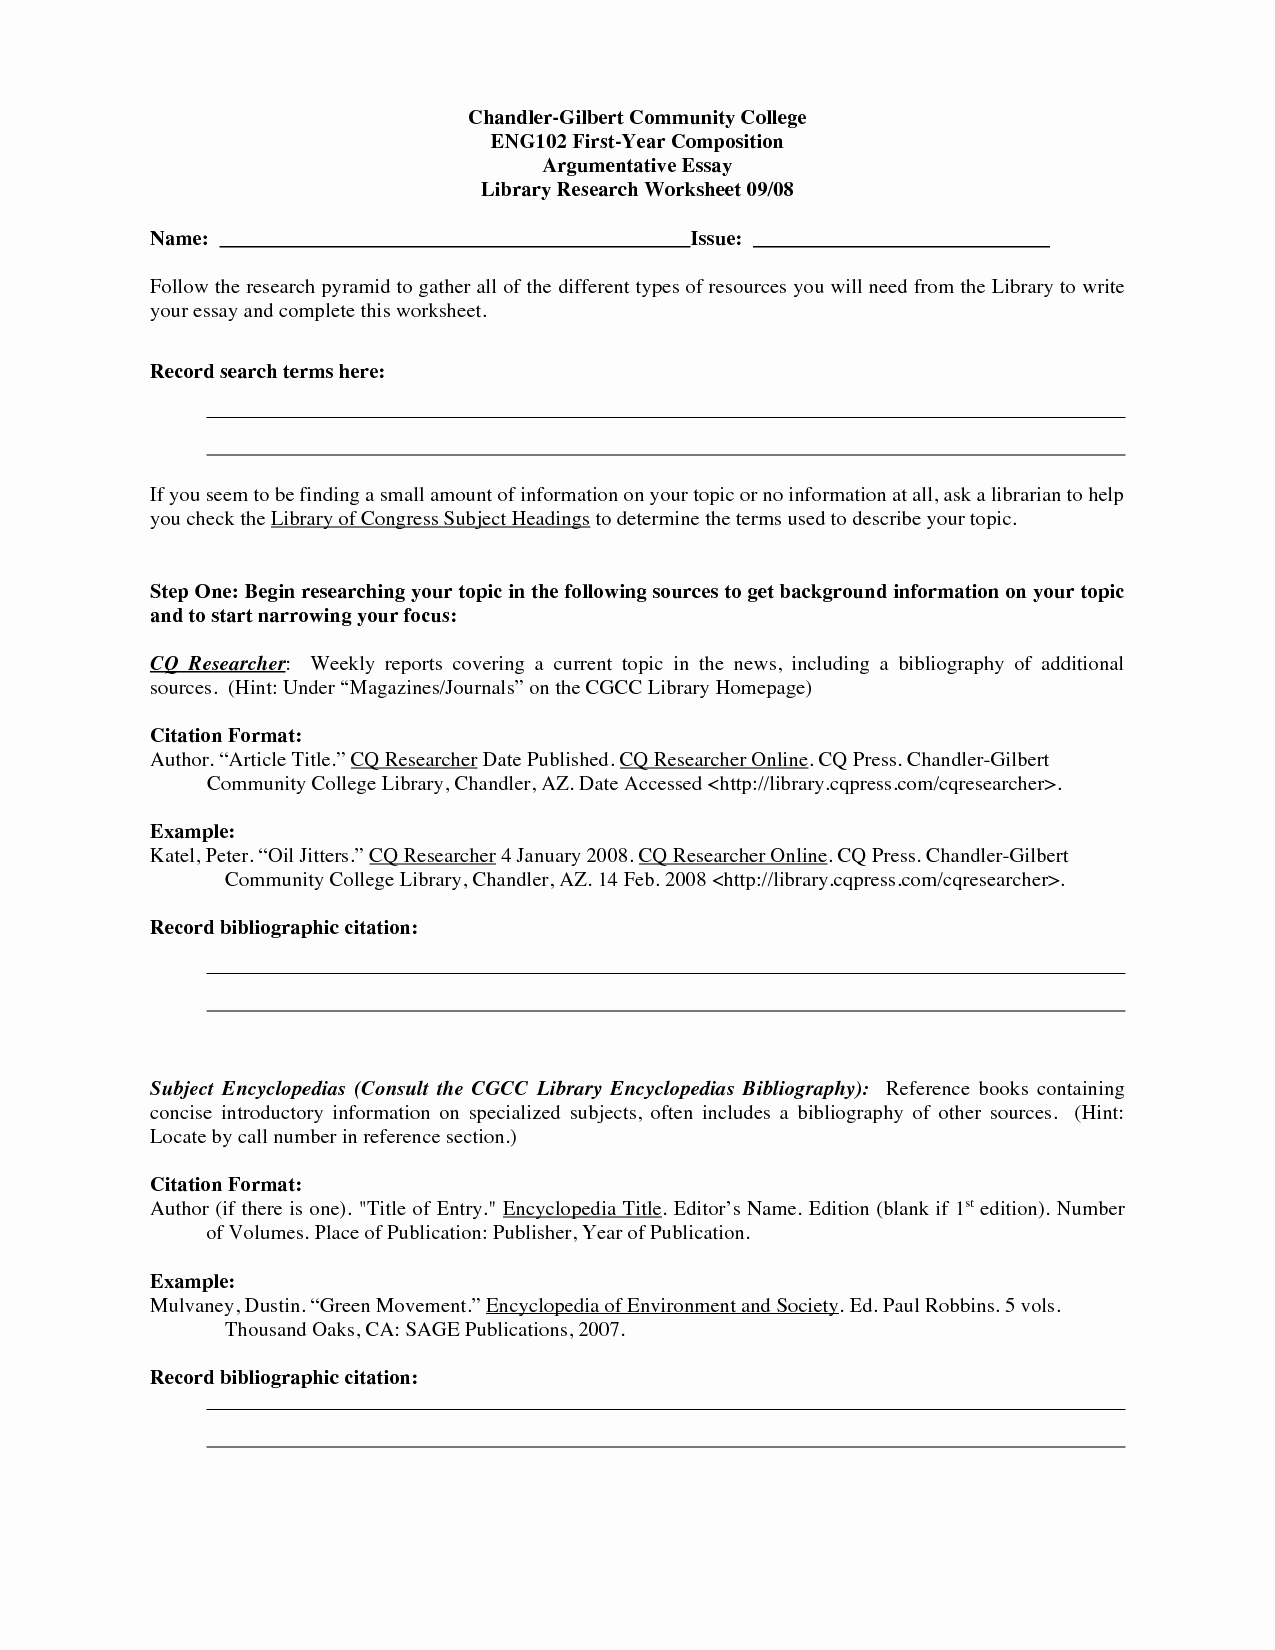 Argumentative Essay Outline Worksheet Lovely 16 Best Of Argumentative Essay Outline Worksheet